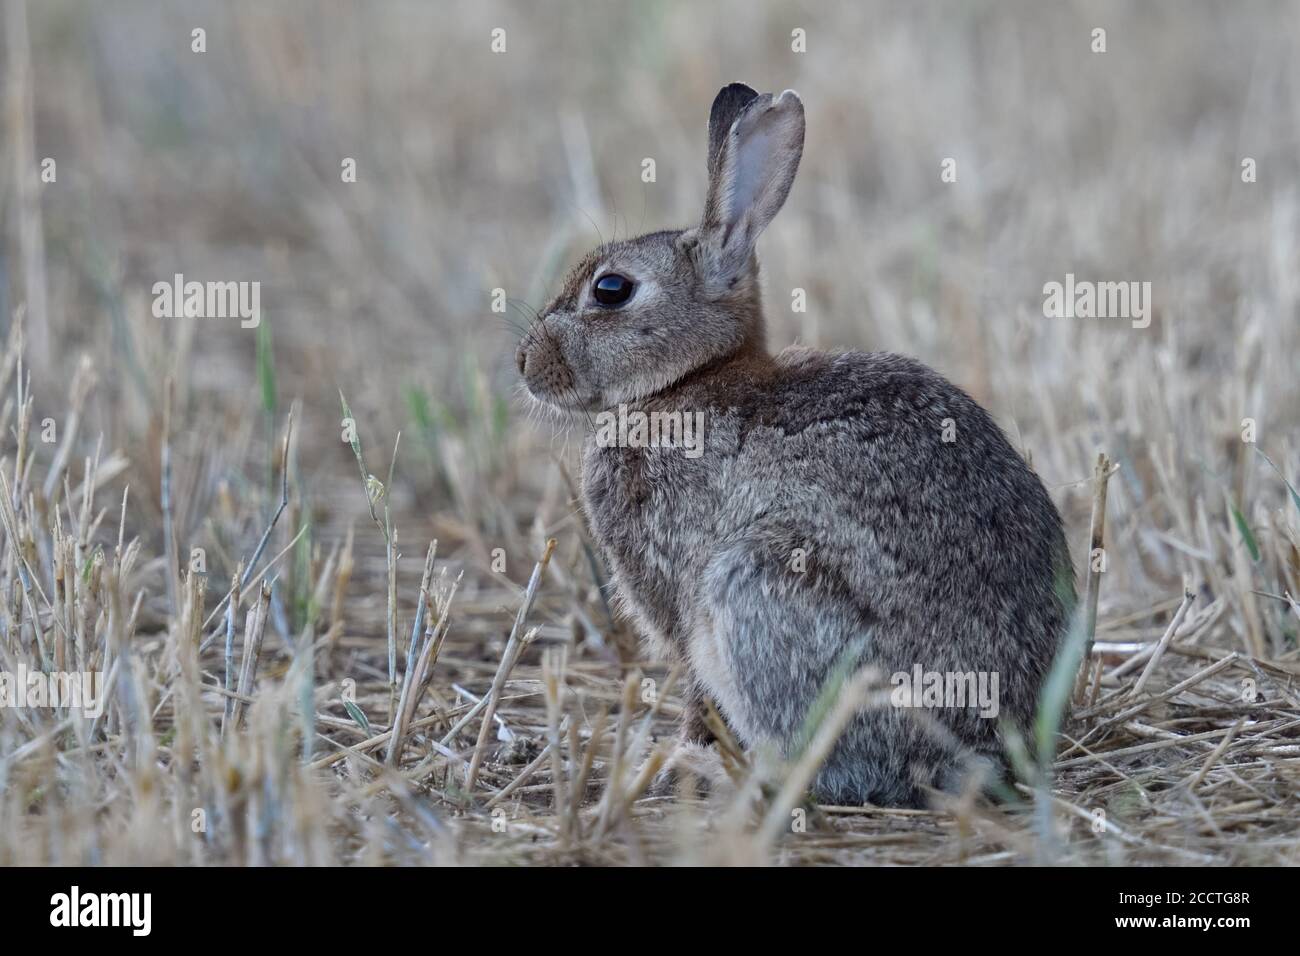 Kaninchen / Europäischer Hase ( Oryctolagus cuniculus ) sitzt in einem geernteten Feld, beobachten, sieht niedlich, Stoppeln Feld, früh am Morgen, Tierwelt, Stockfoto